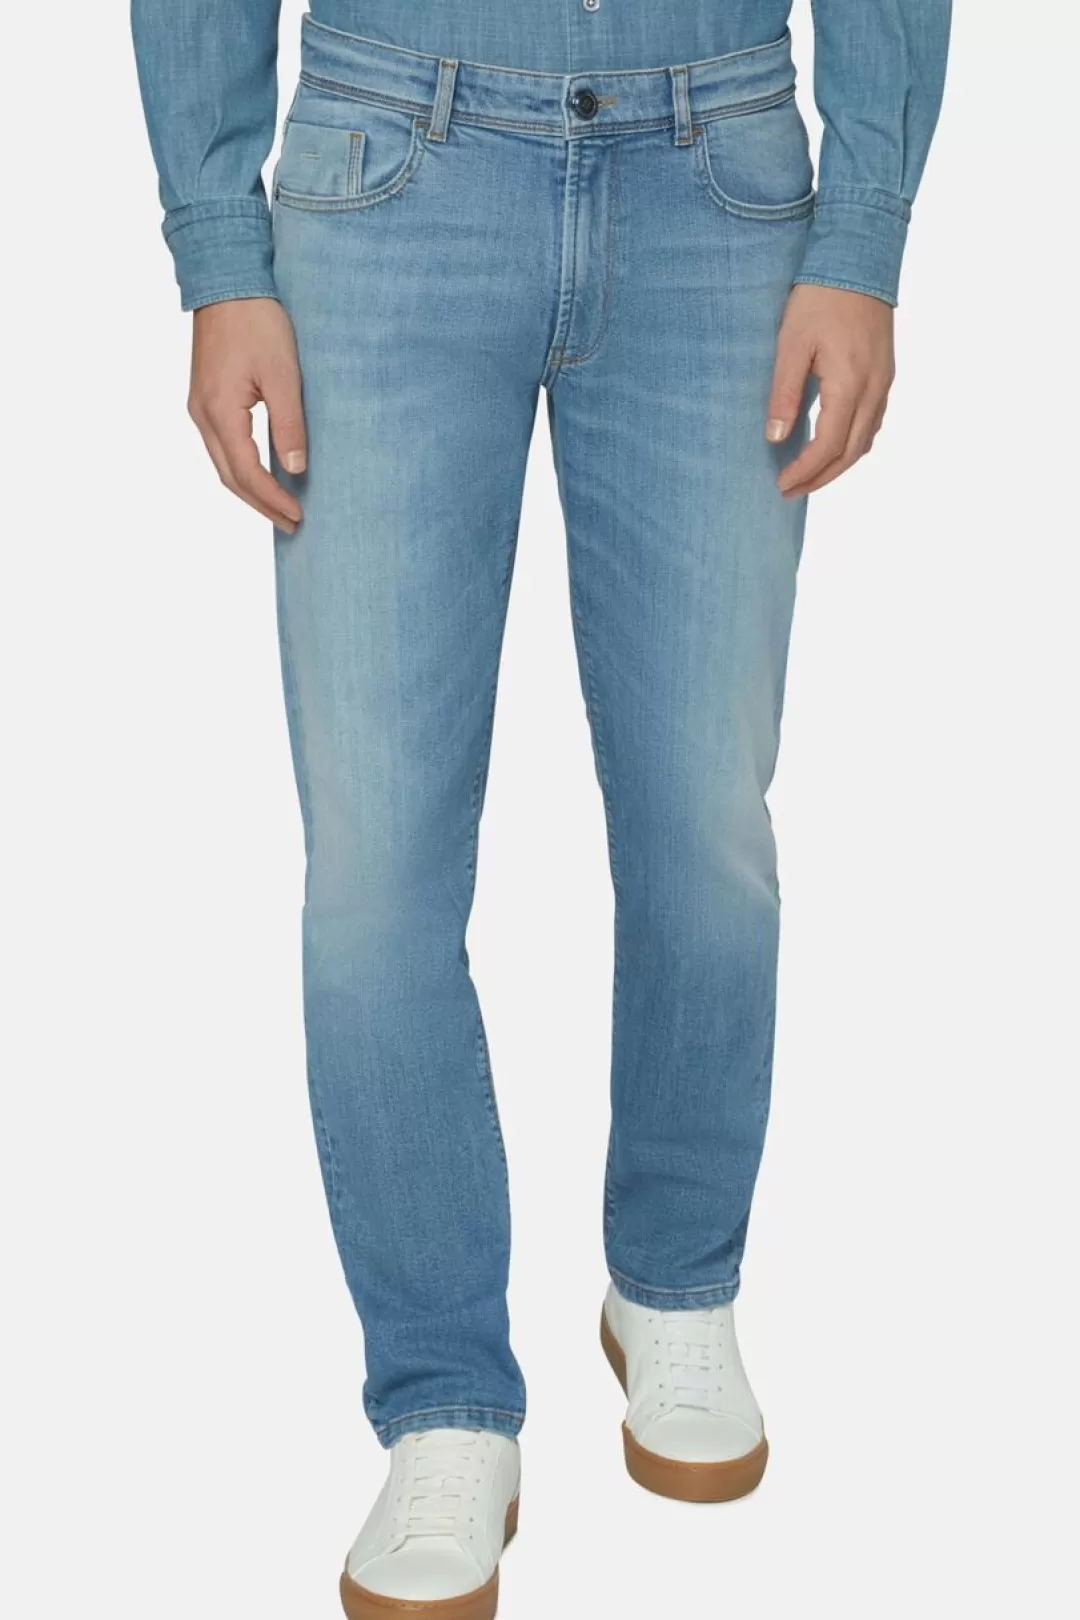 Boggi Jeans In Denim Elasticizzato Blu Chiaro Indaco Chiaro Sale